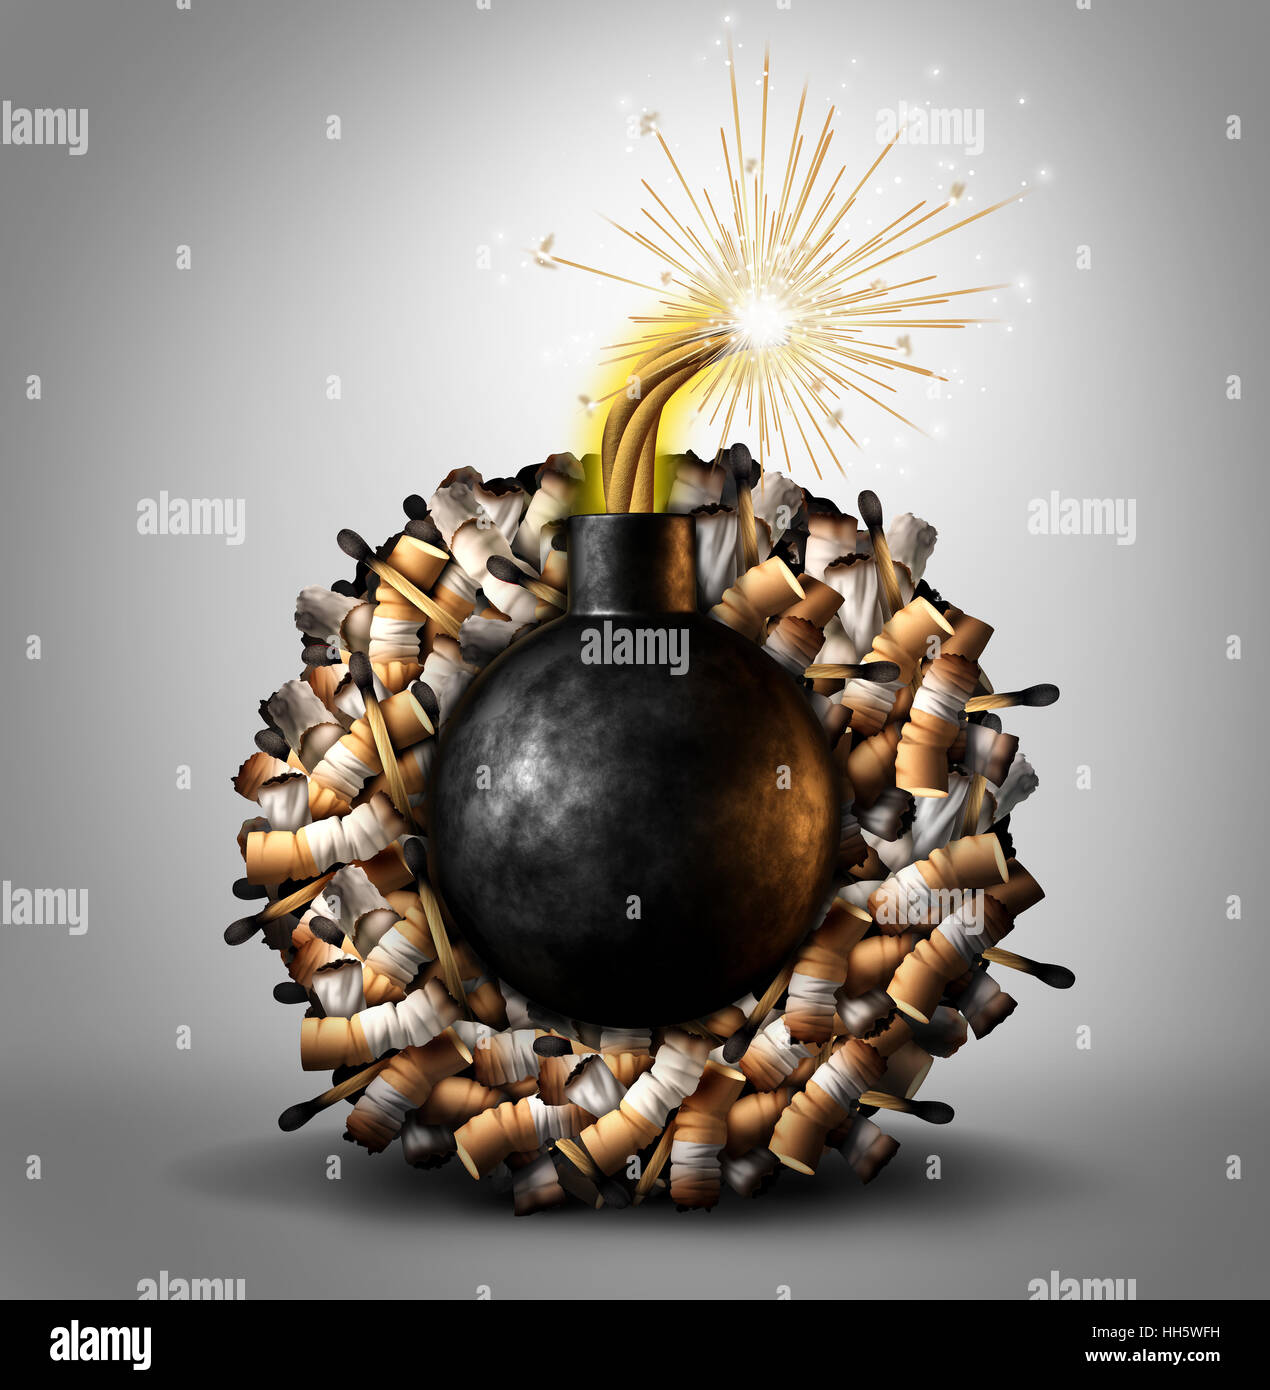 Temps de fumer danger bombe concept comme un groupe de cigarette et correspond à la gravure avec un explosif à l'intérieur éclairé comme une métaphore causant le cancer du poumon et mortelle Banque D'Images